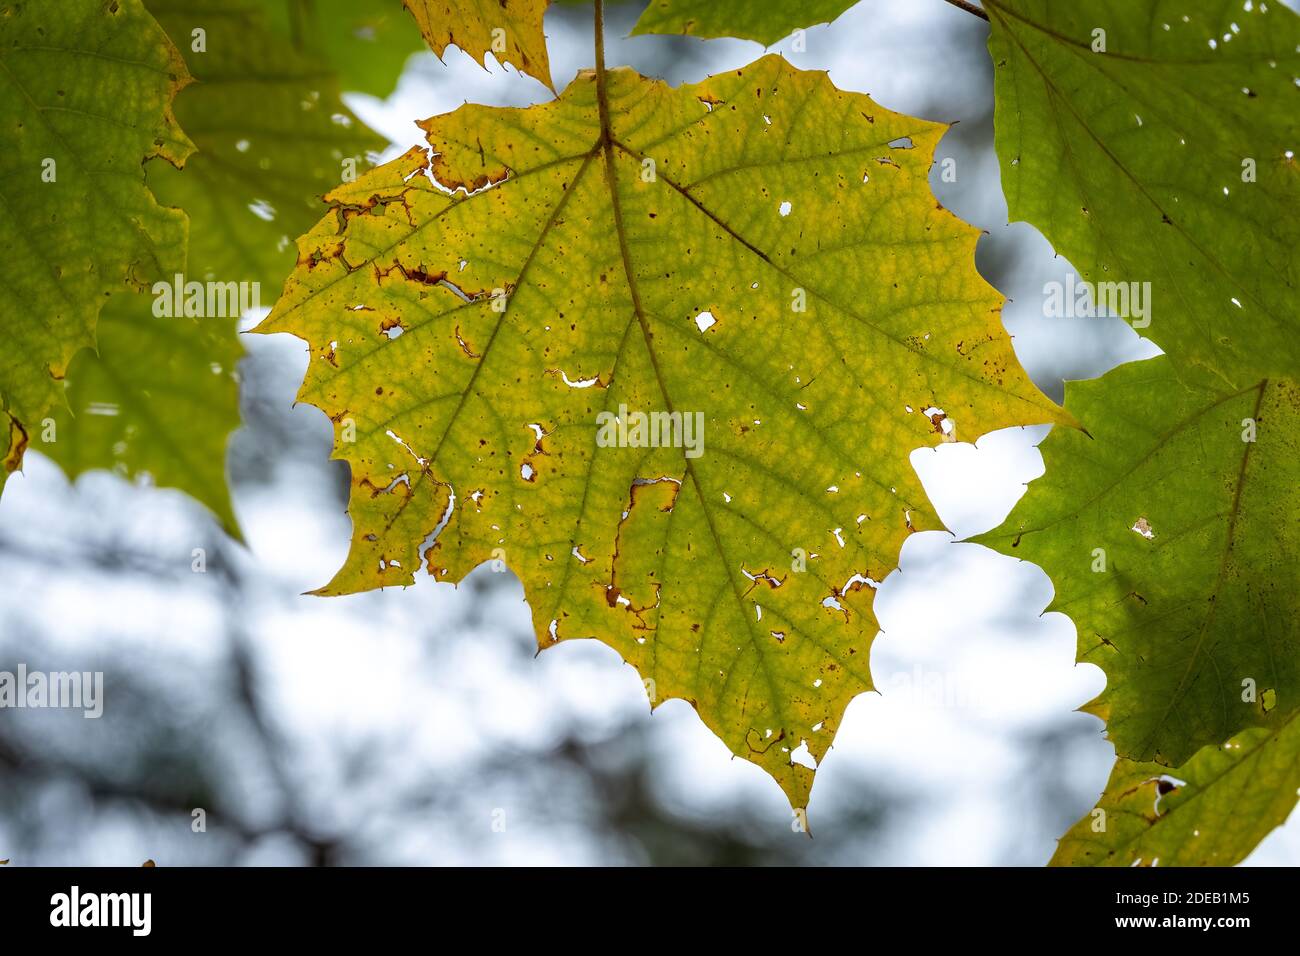 El otoño vibes como una hoja de Sycamore estadounidense (Platanus occidentalis) cambia de color un poco antes que sus neigbors. Raleigh, Carolina del Norte. Foto de stock